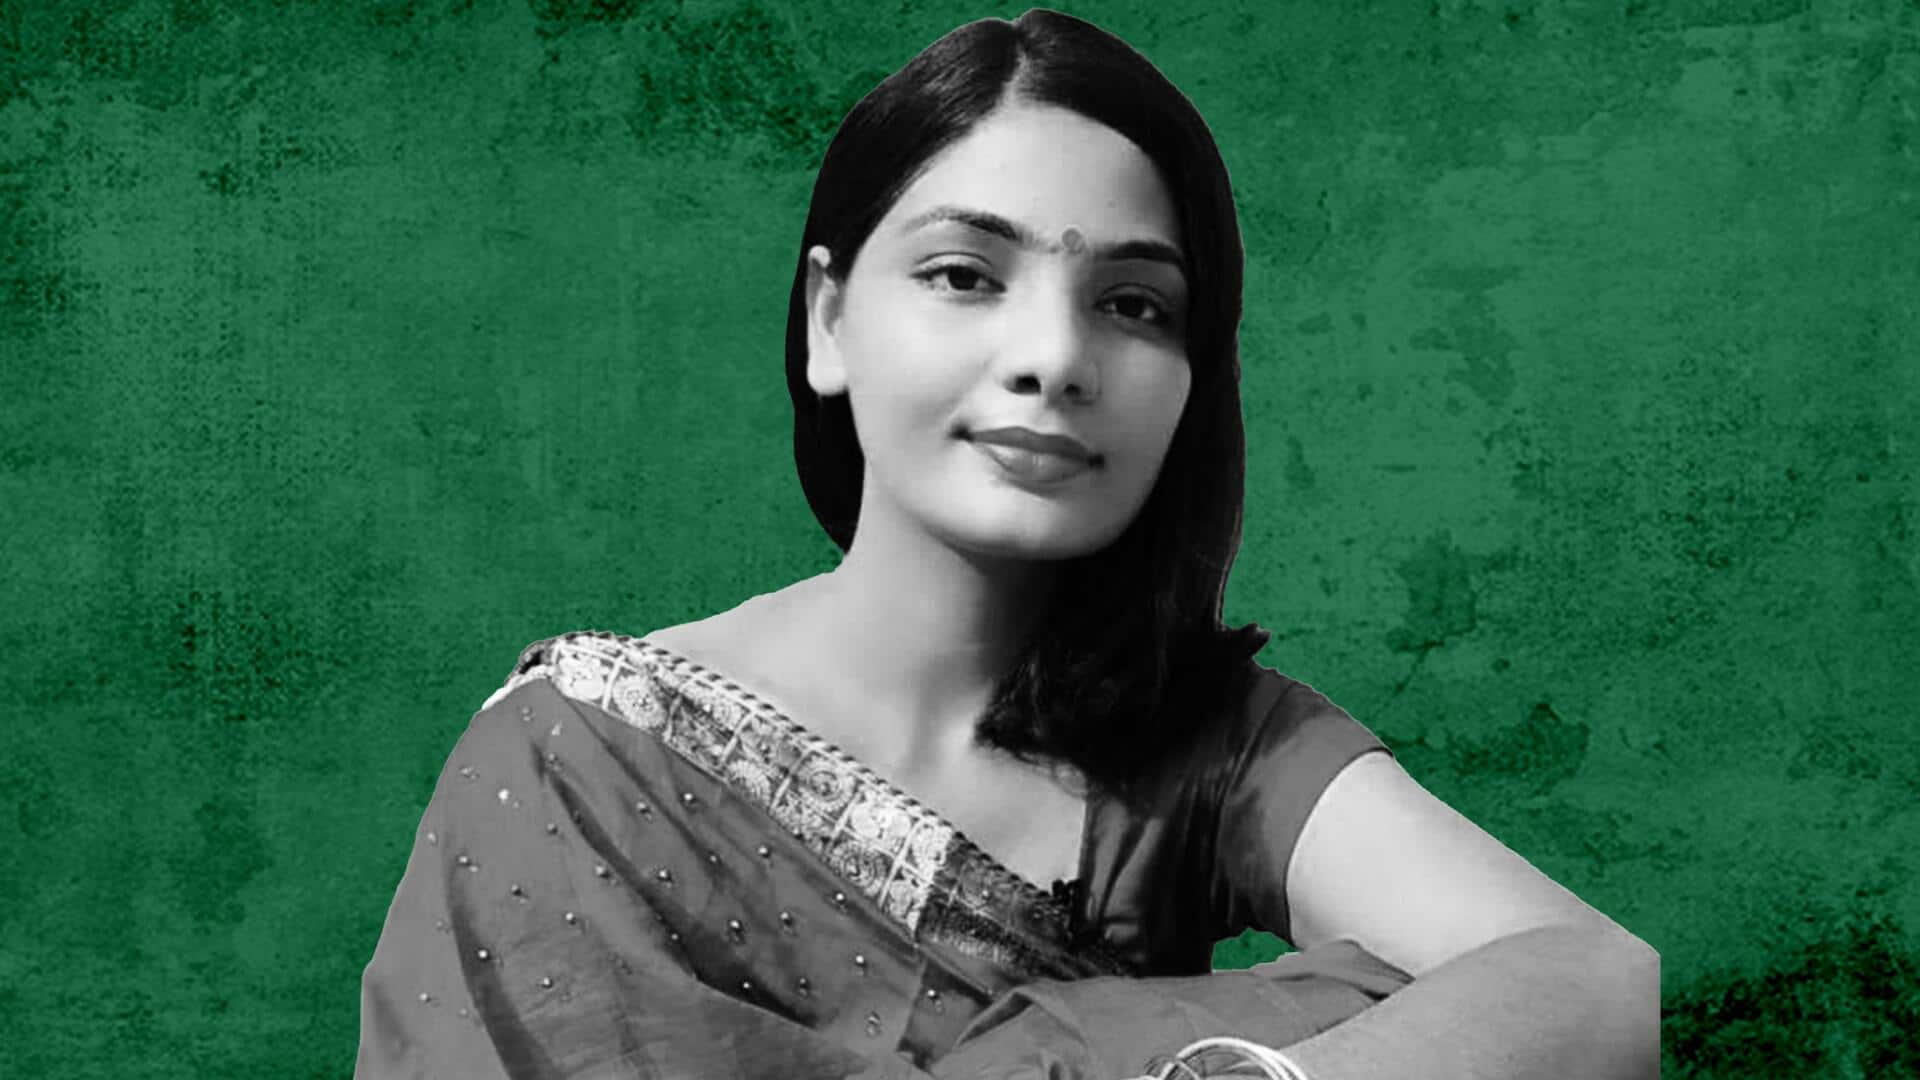 'यूपी में का बा' गीत को लेकर गायिका नेहा राठौर को उत्तर प्रदेश पुलिस का नोटिस